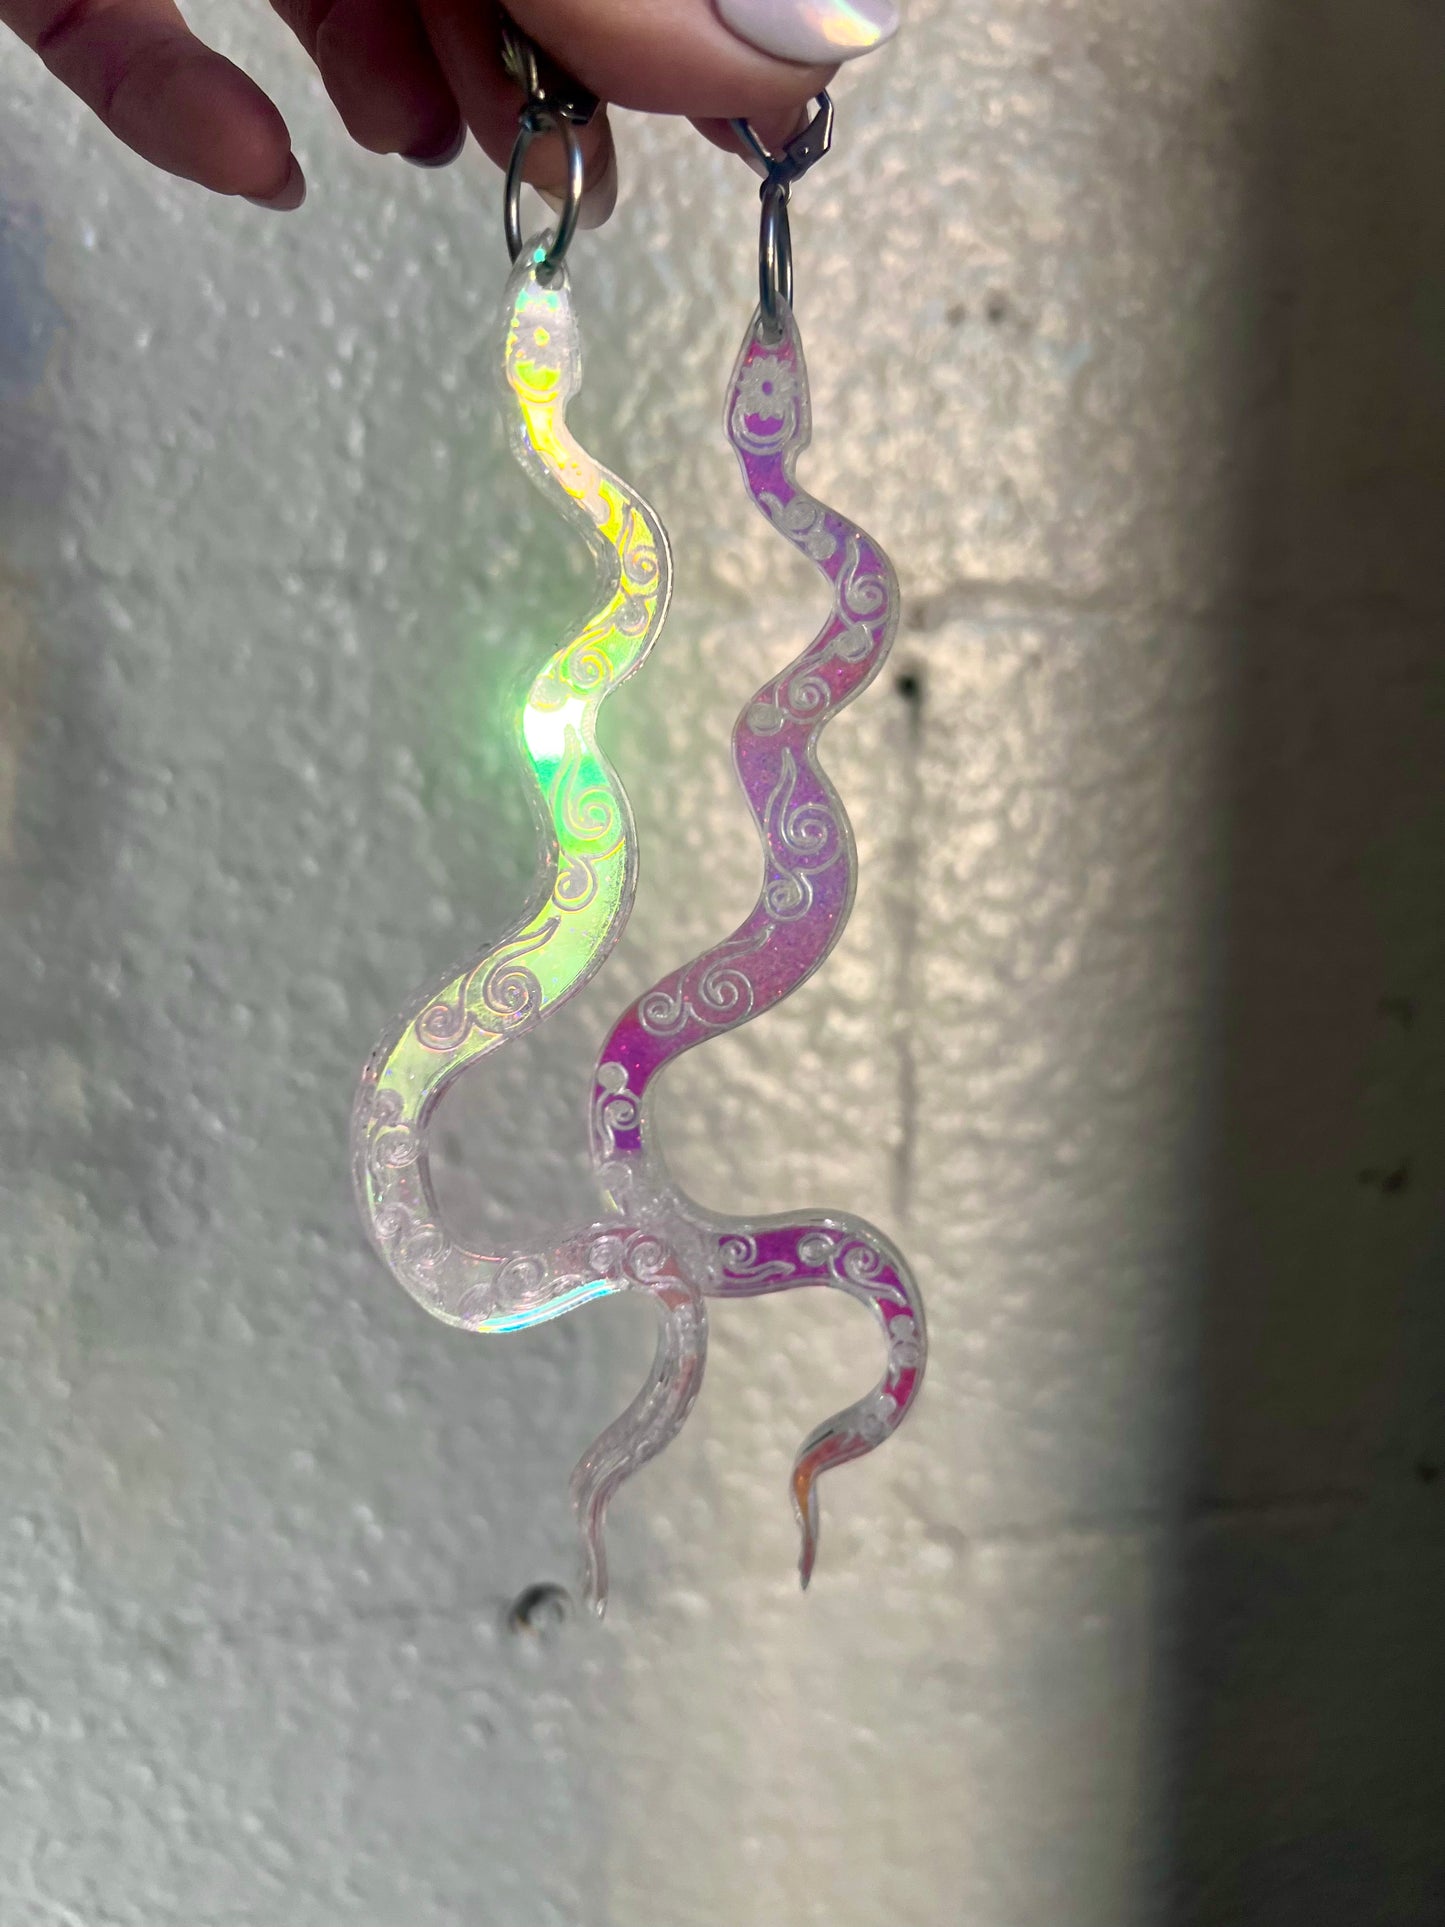 Holographic goddess Snake Earrings